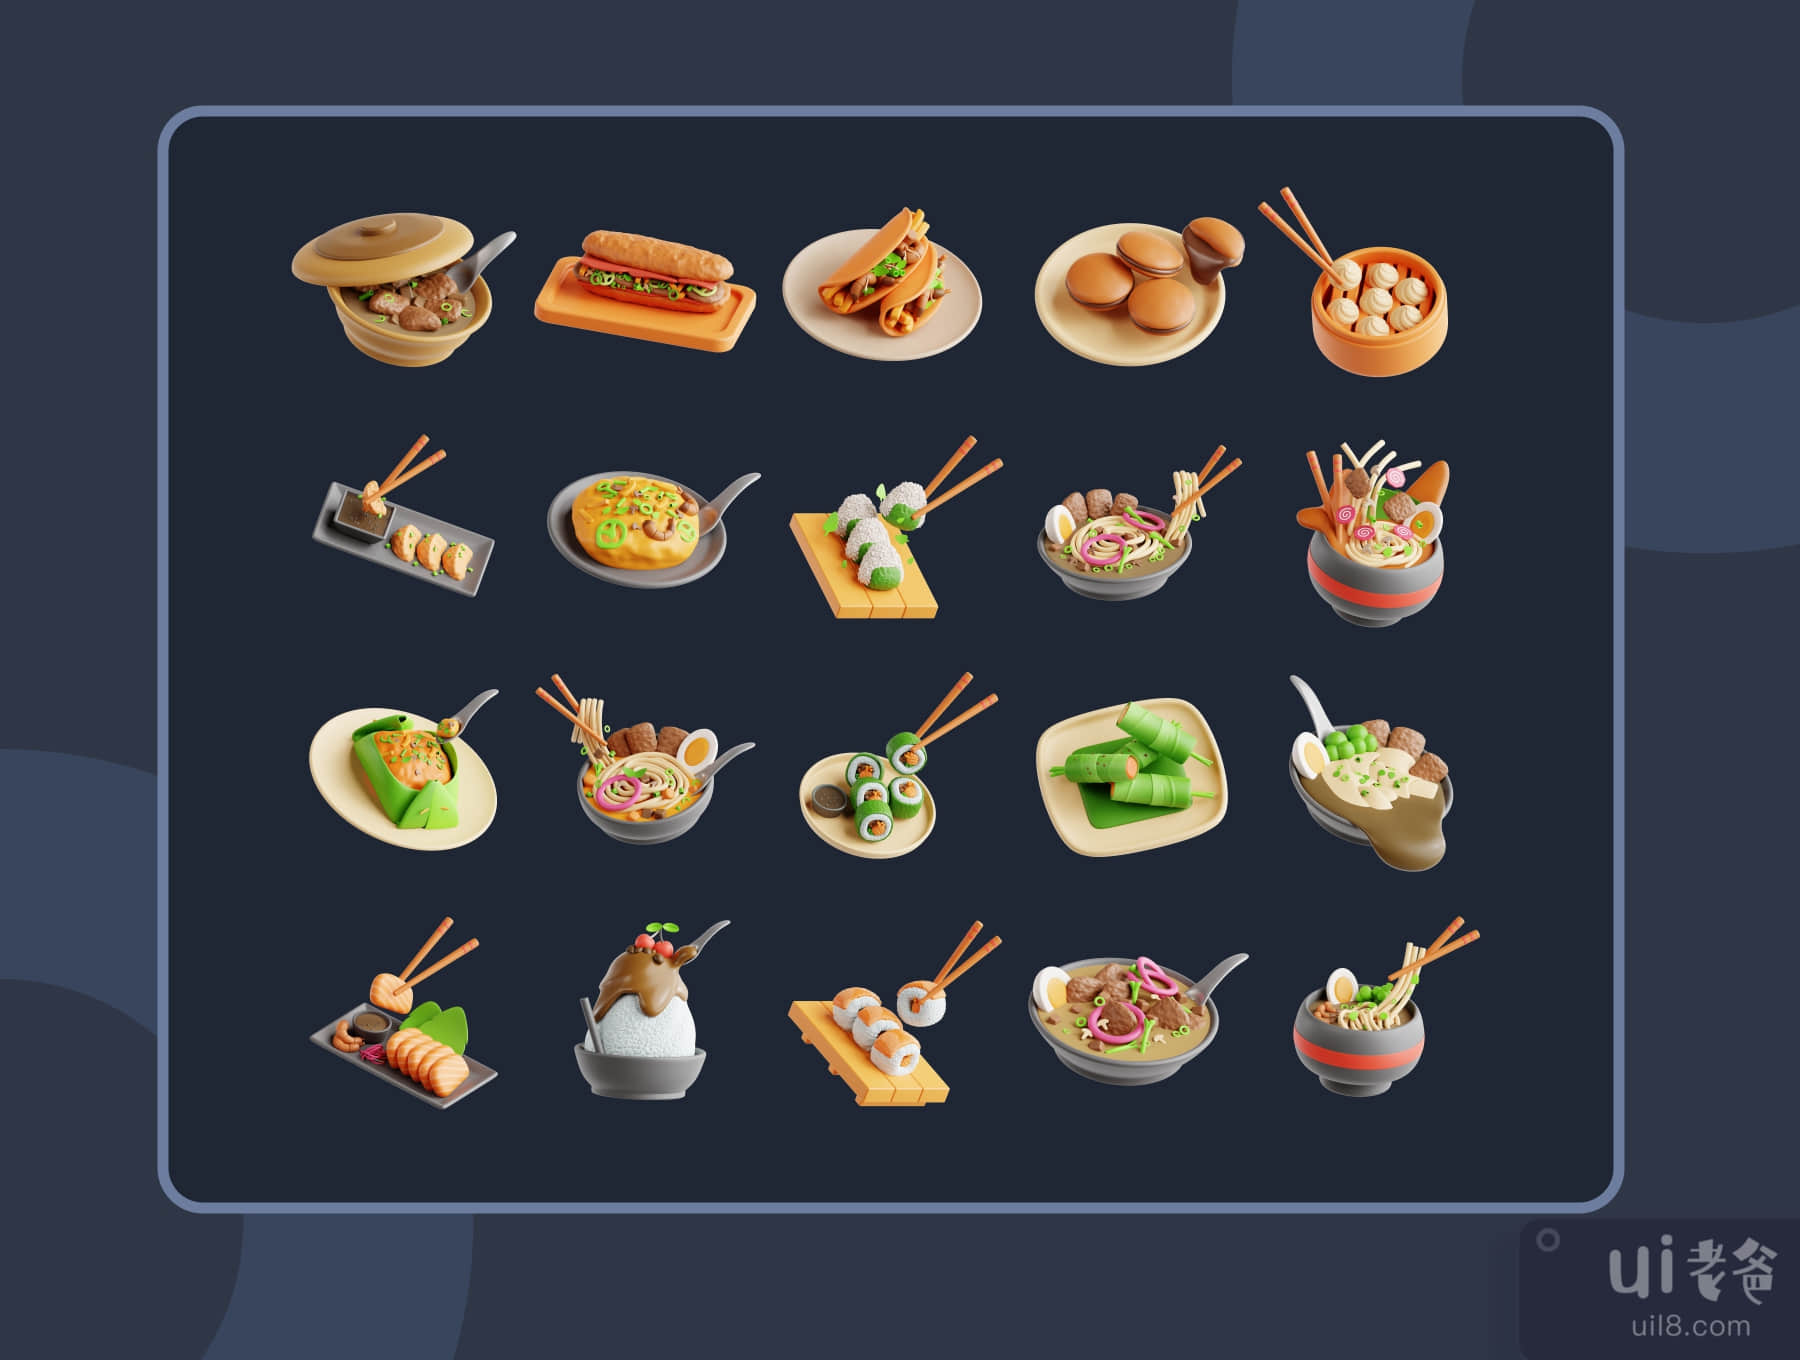 三维亚洲食品 (3D Asian Food)插图6